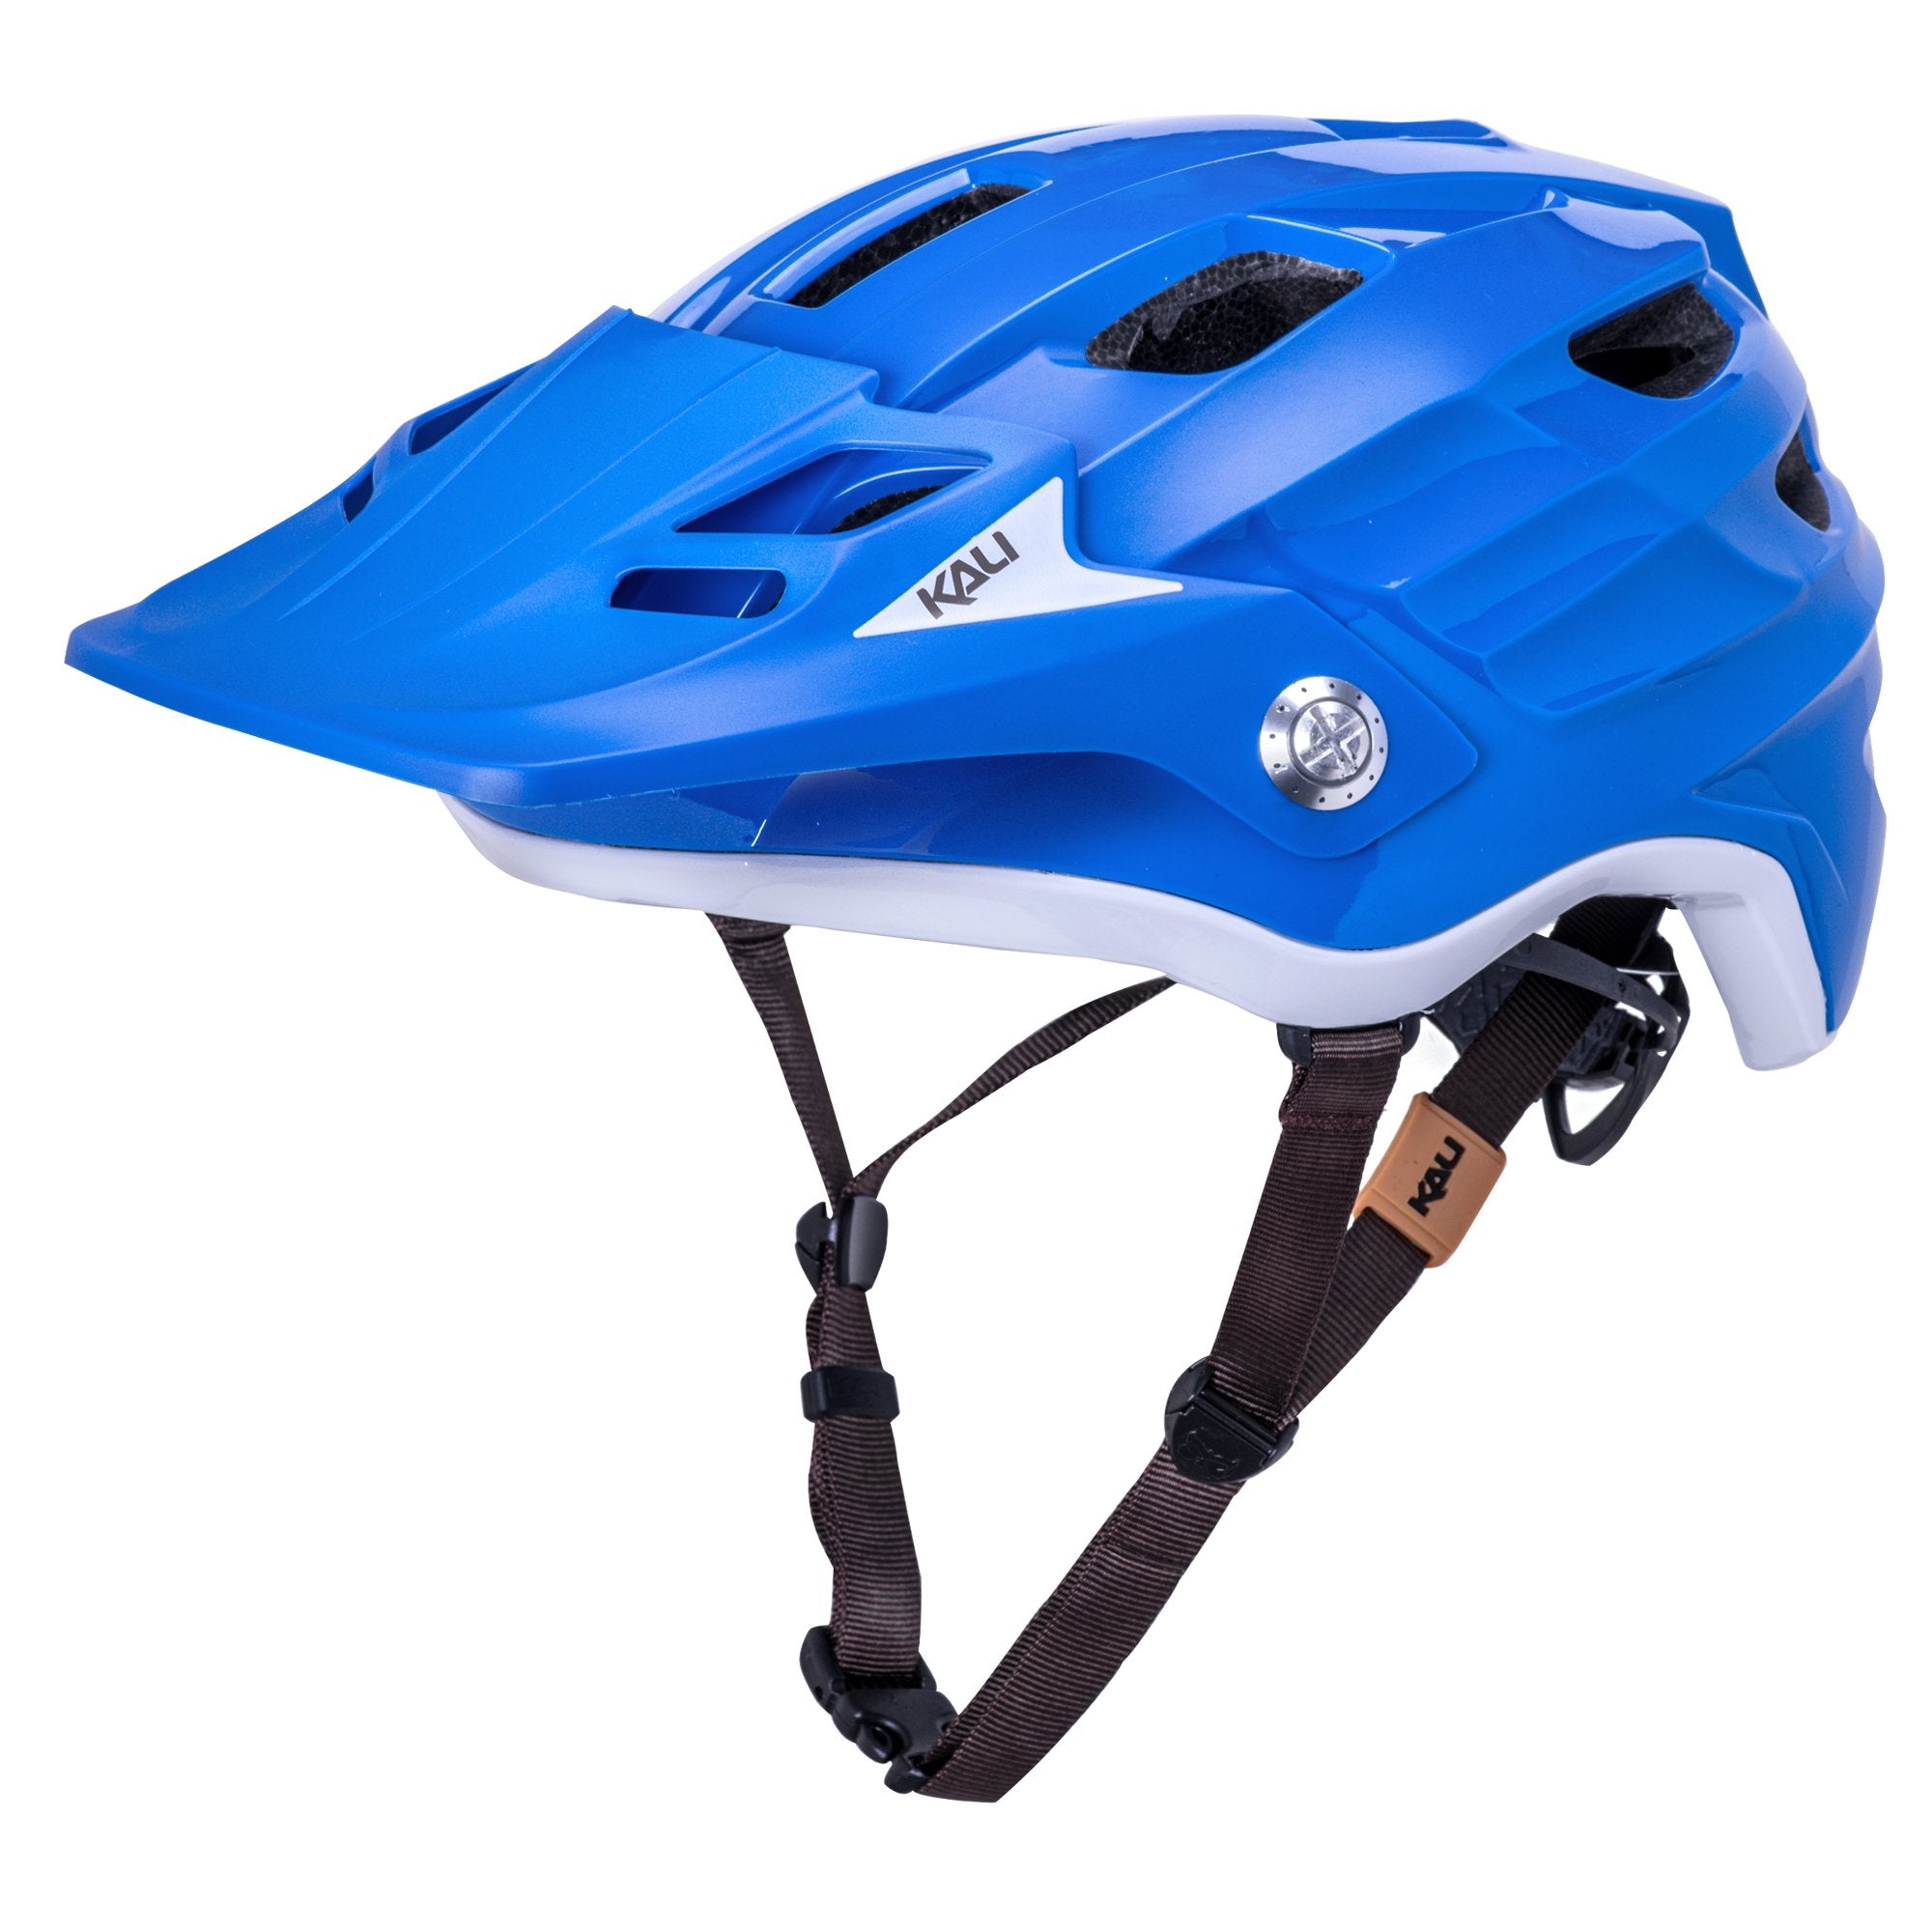 Kali Maya 3.0 Bicycle Helmet (3 Colors)